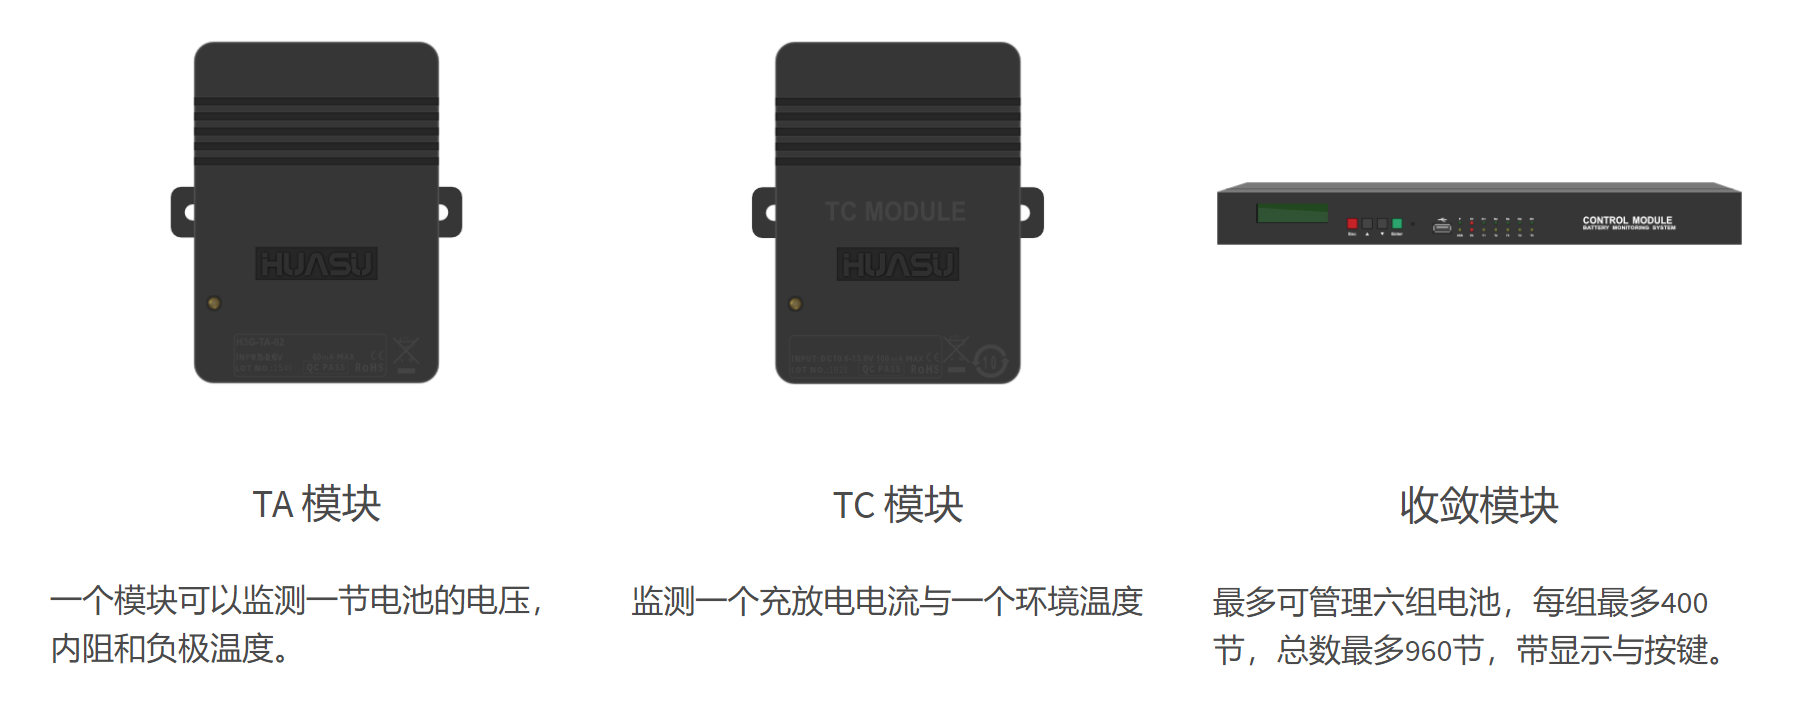 H3G-TA 蓄电池在线监控系统(图1)